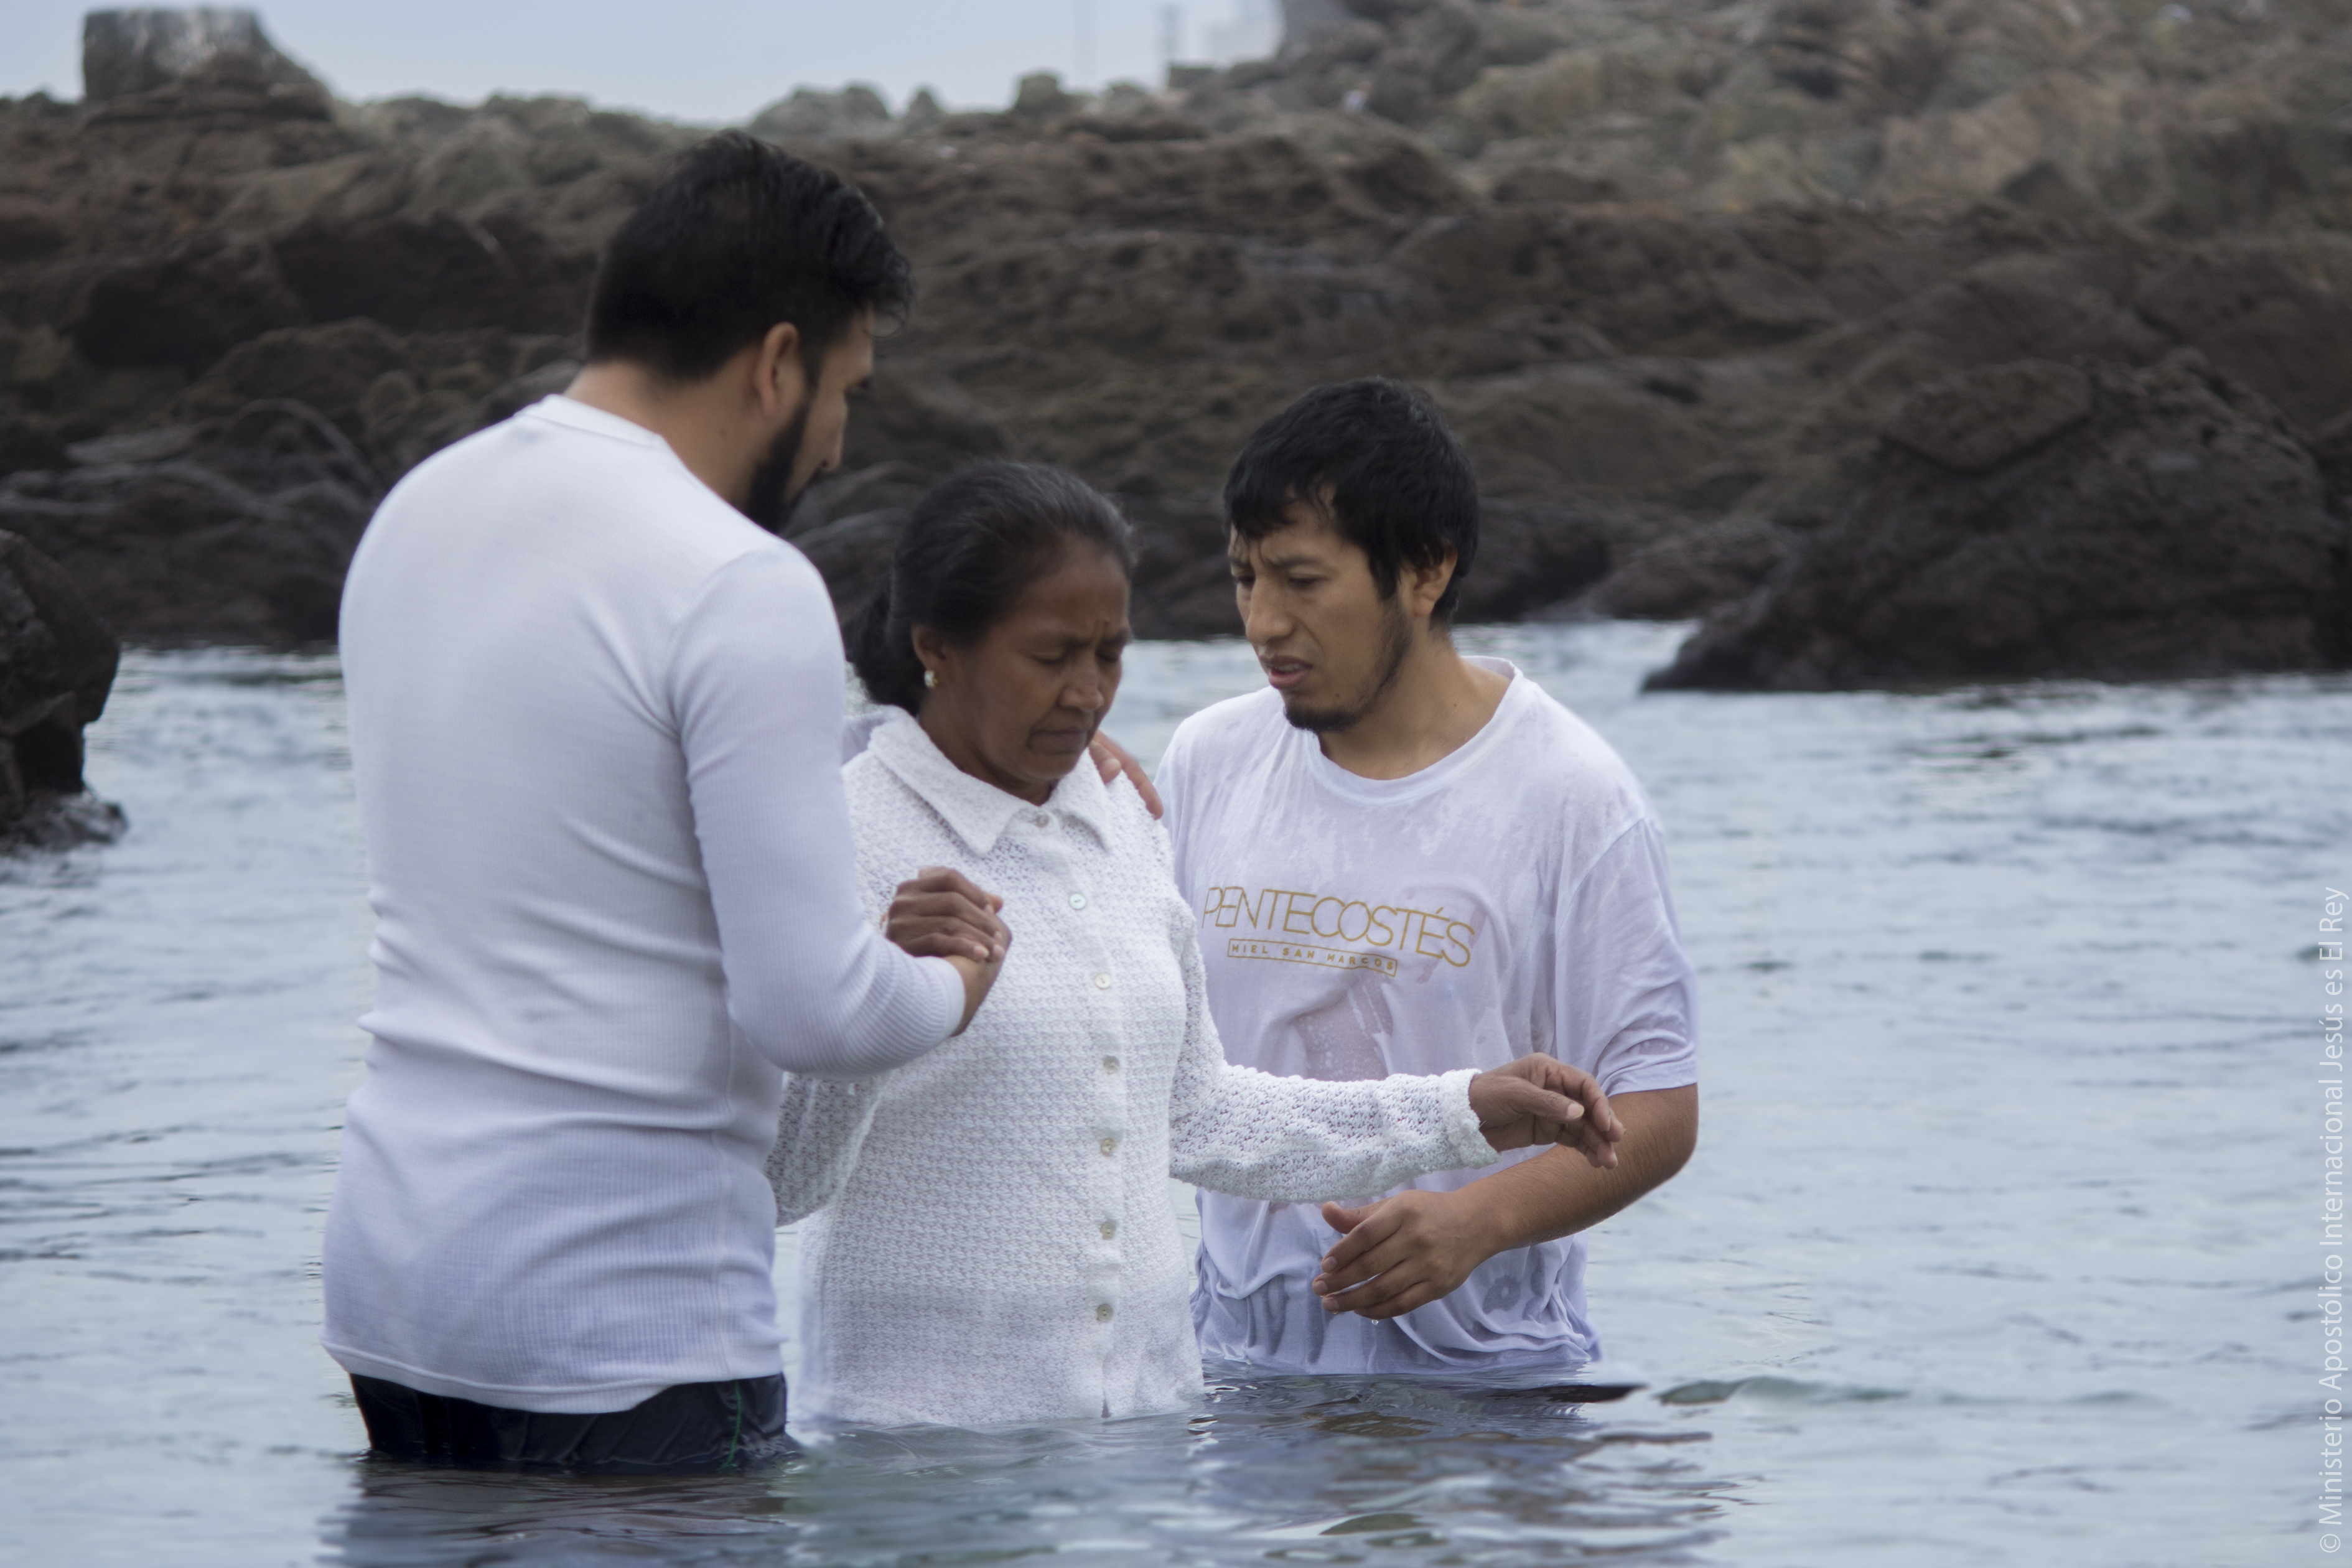 59 personas dijeron “sí” al bautismo